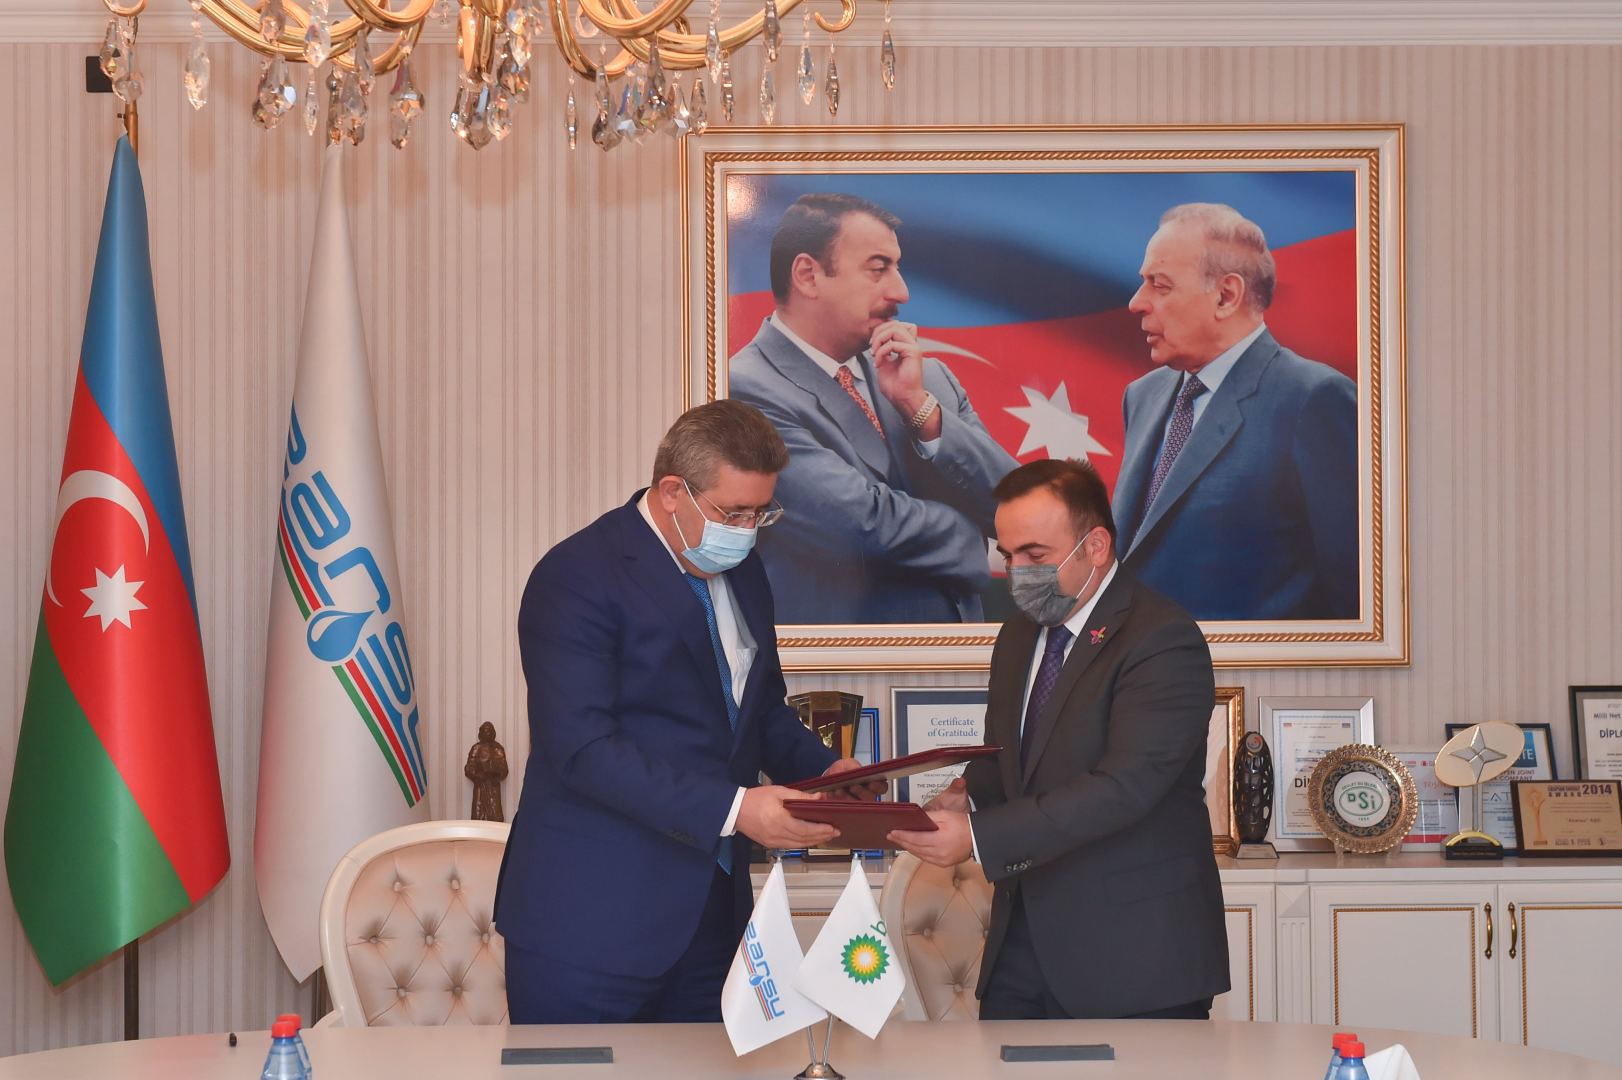 ОАО Azersu и BP подписали меморандум о взаимопонимании (ФОТО)